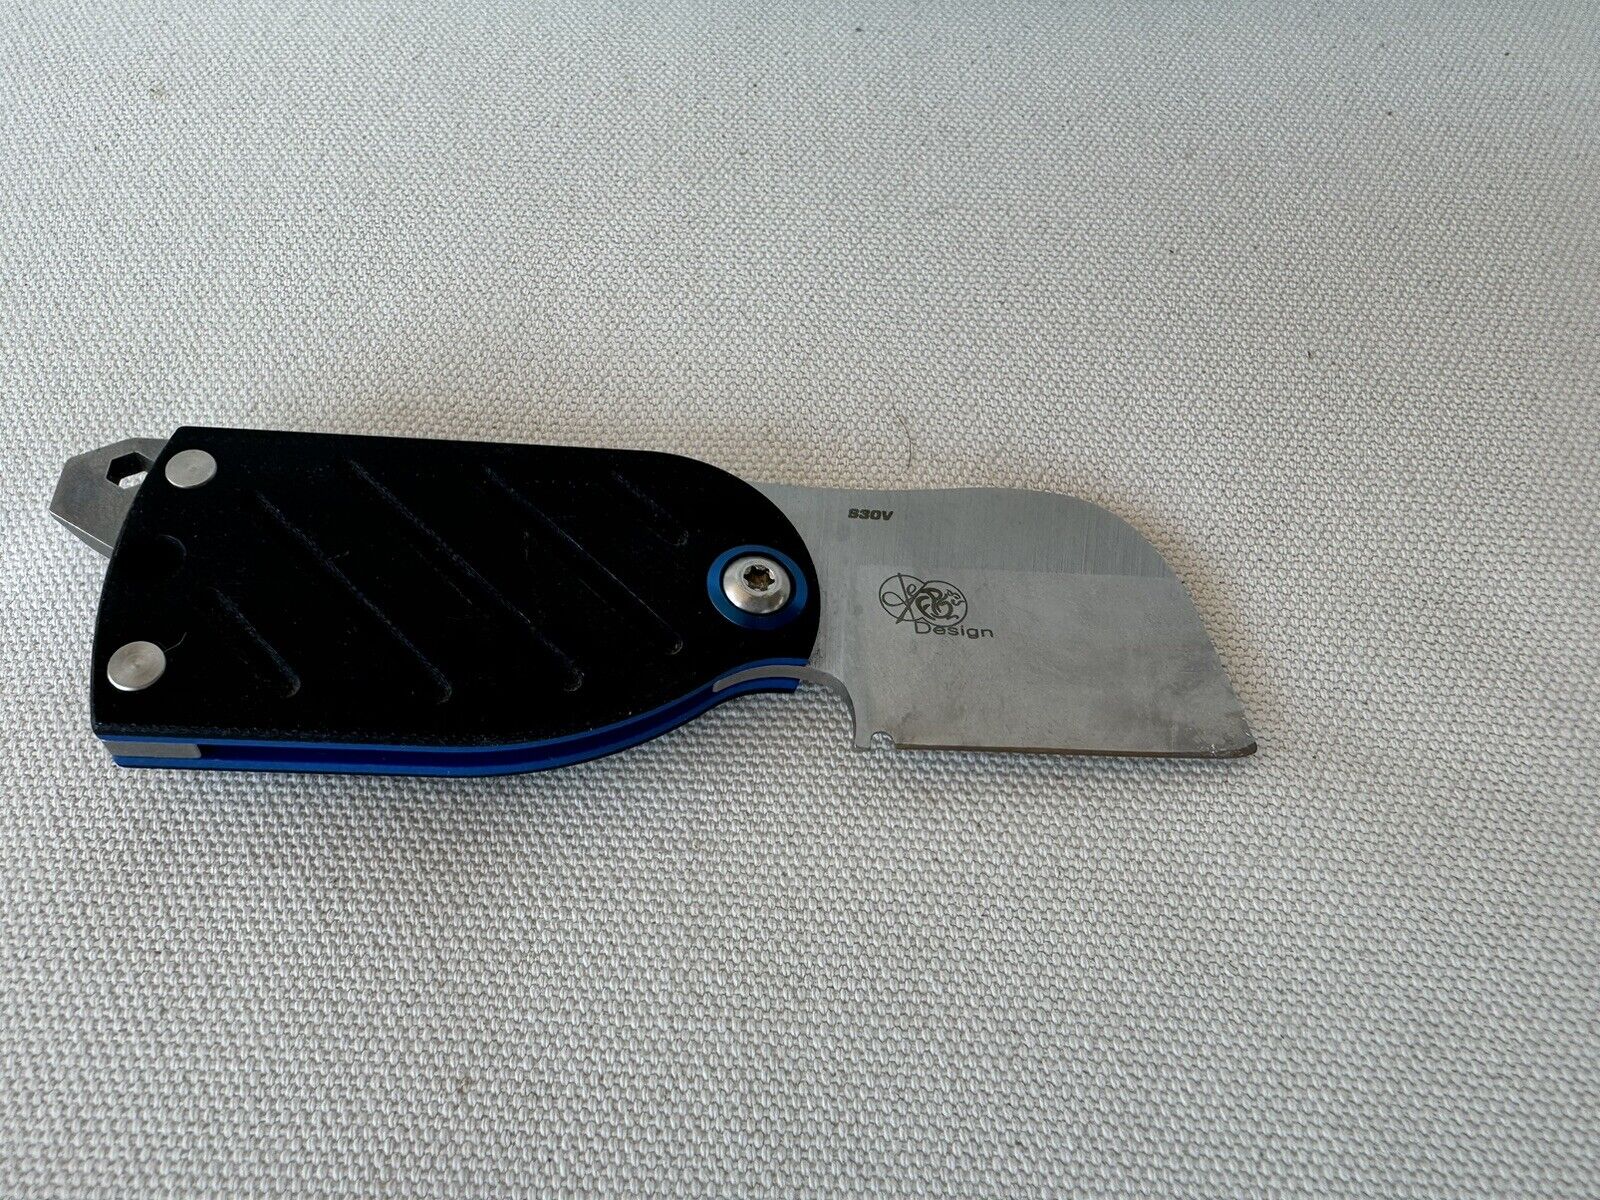 Benchmade Aller 380 Folding Knife Multi-tool